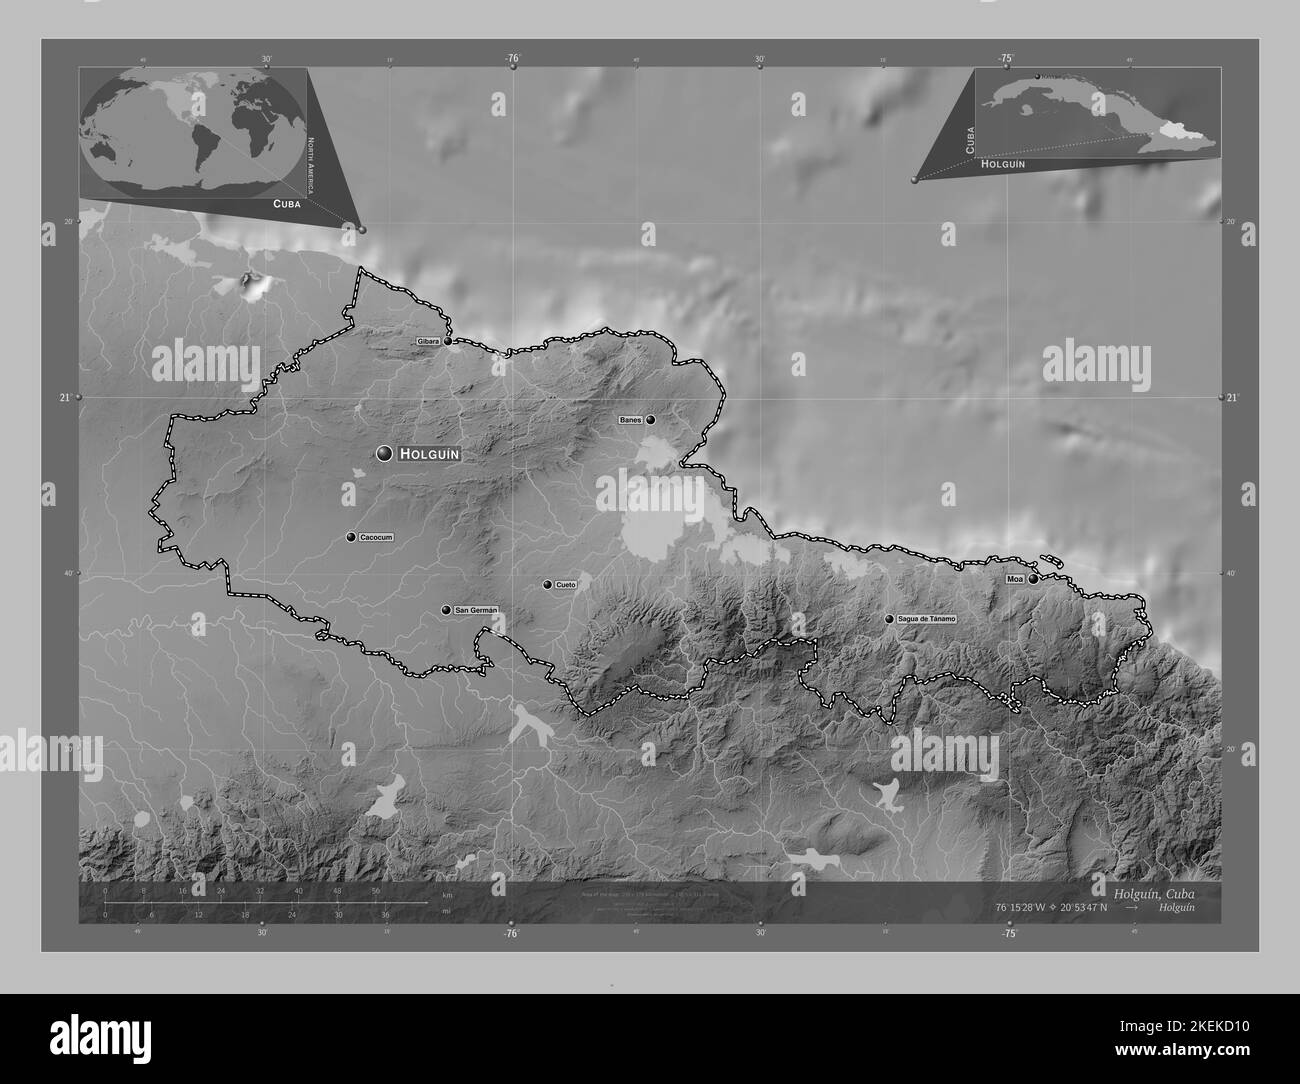 Holguin, province de Cuba. Carte d'altitude en niveaux de gris avec lacs et rivières. Lieux et noms des principales villes de la région. Emplacement auxiliaire du coin Banque D'Images